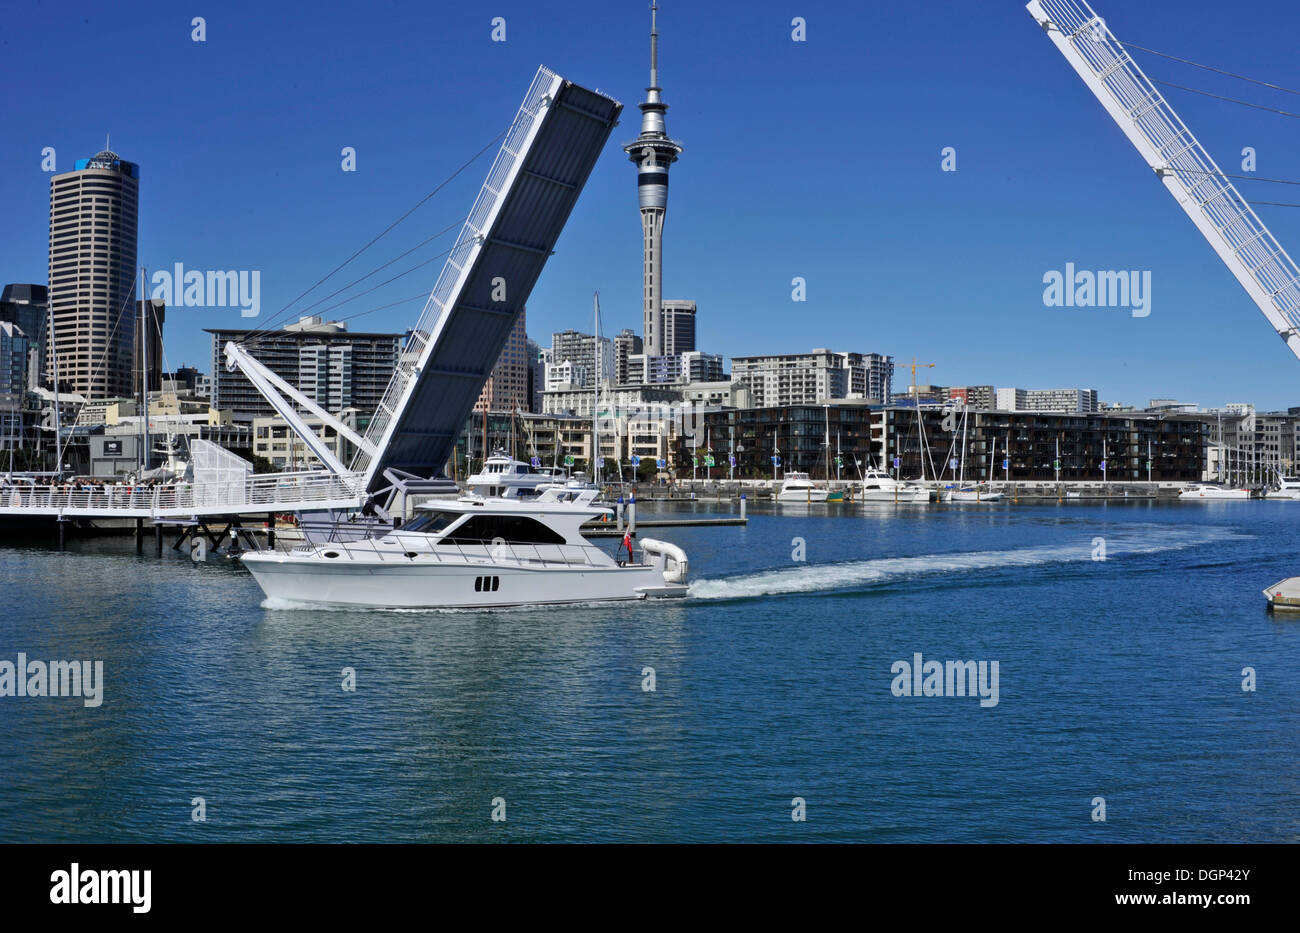 Location de quitter le port à travers le pont basculant ouvert, du viaduc Events Centre, Auckland, Nouvelle-Zélande Banque D'Images